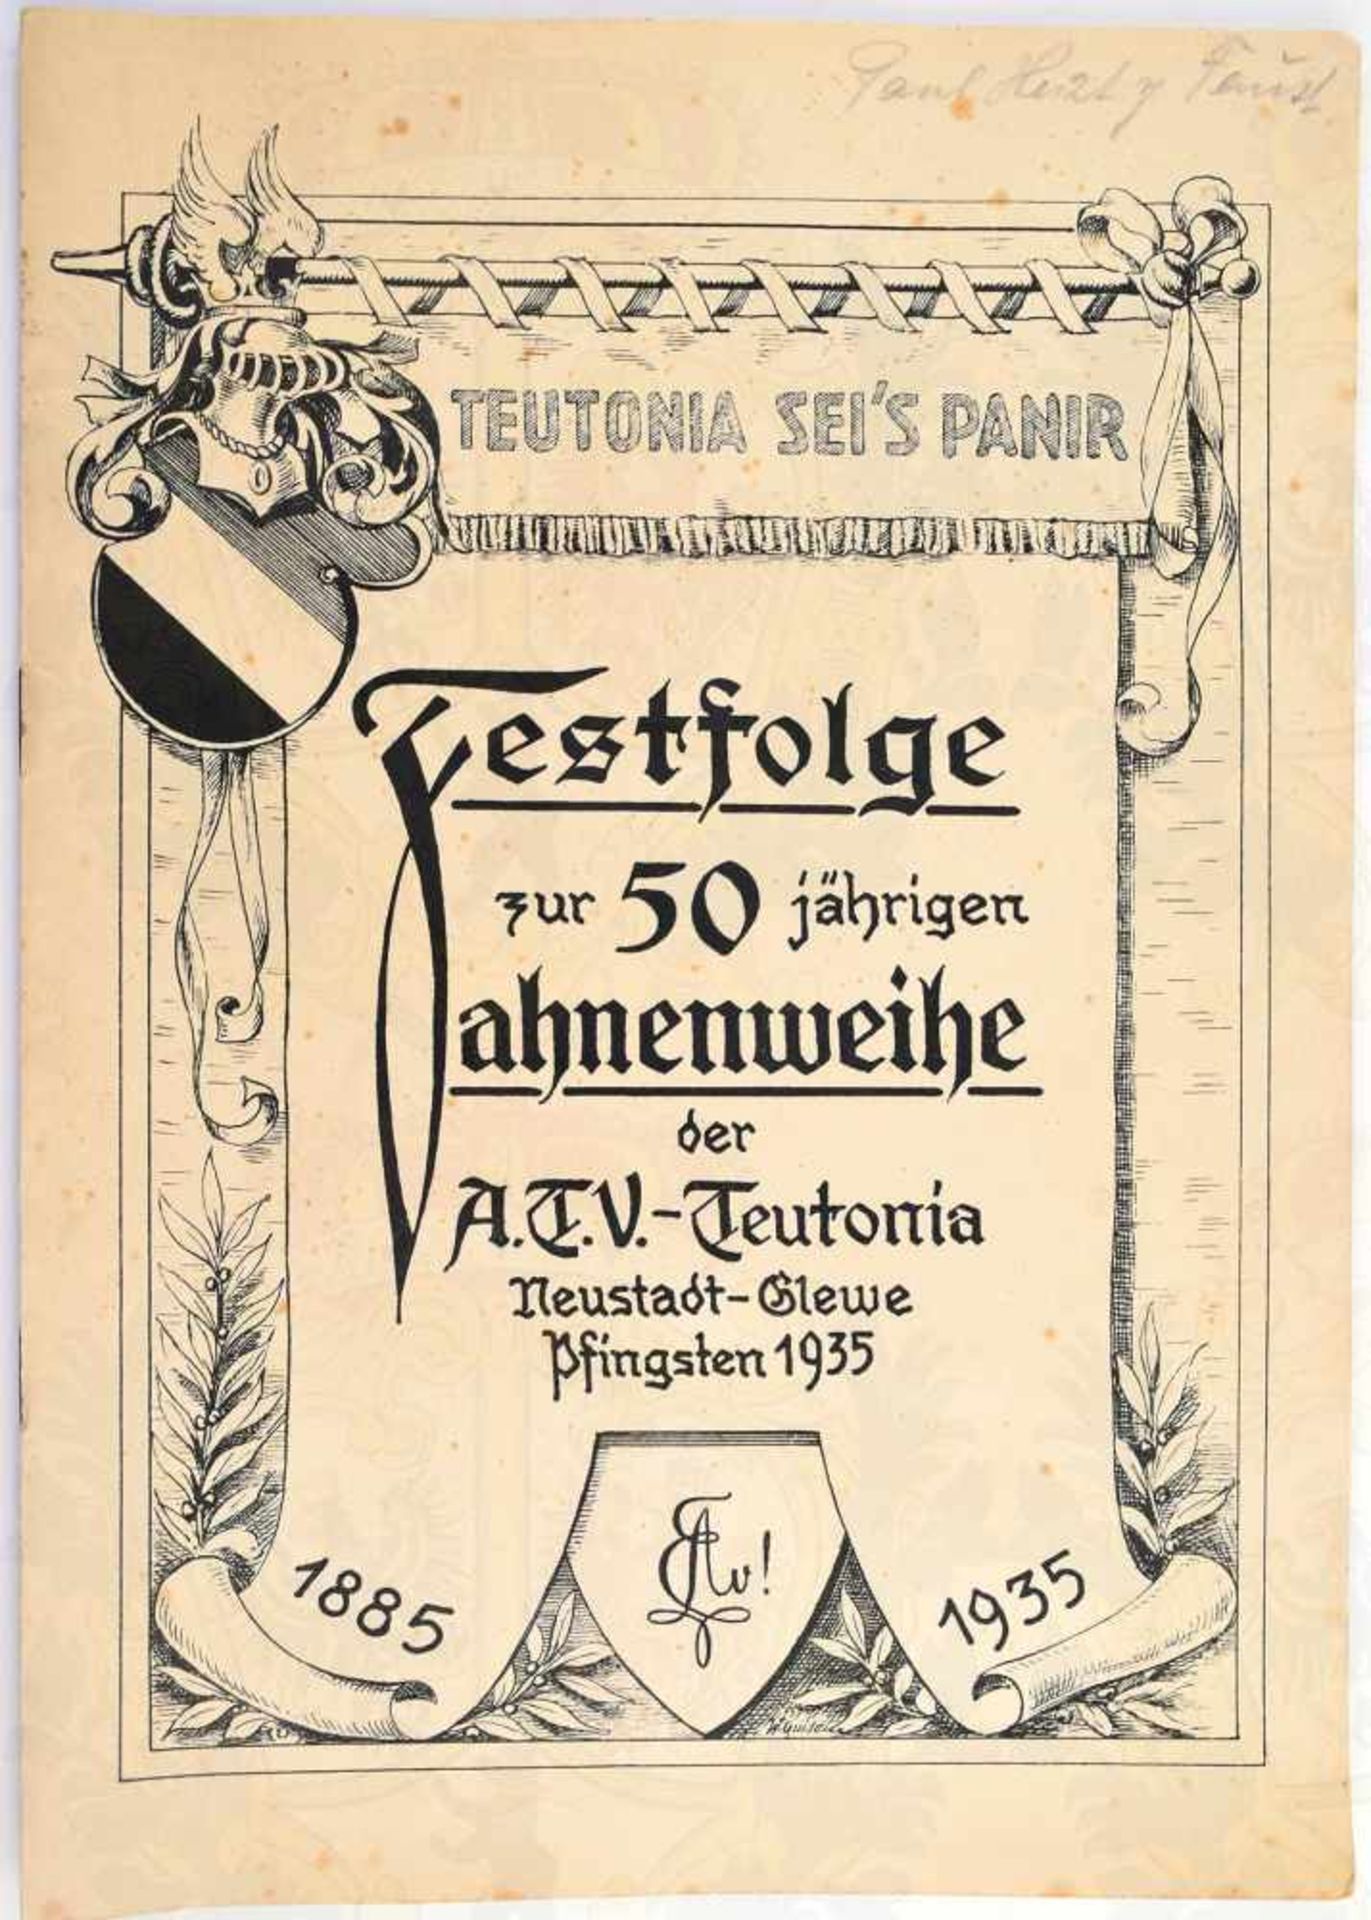 FESTSCHRIFT A.T.V.-TEUTONIA, Neustadt-Clewe, 50jährige Fahnenweihe, 1885-1935, Festordnung,